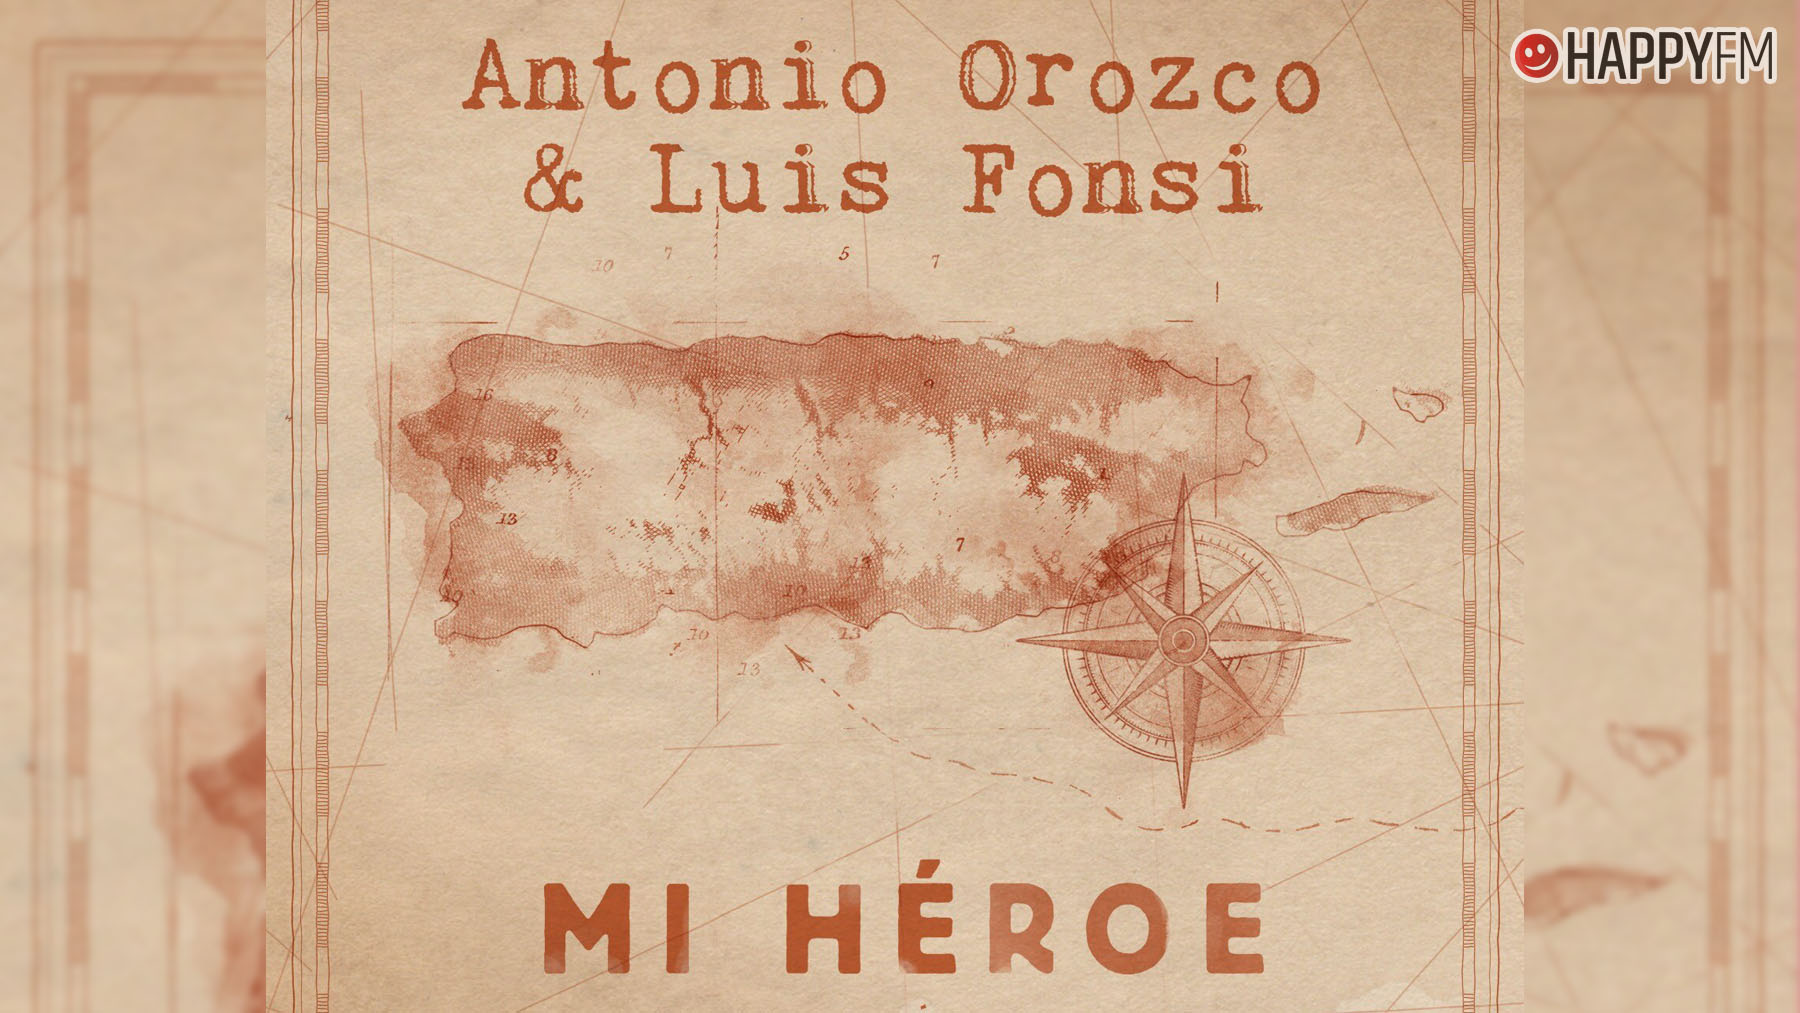 Antonio Orozco y Luis Fonsi.